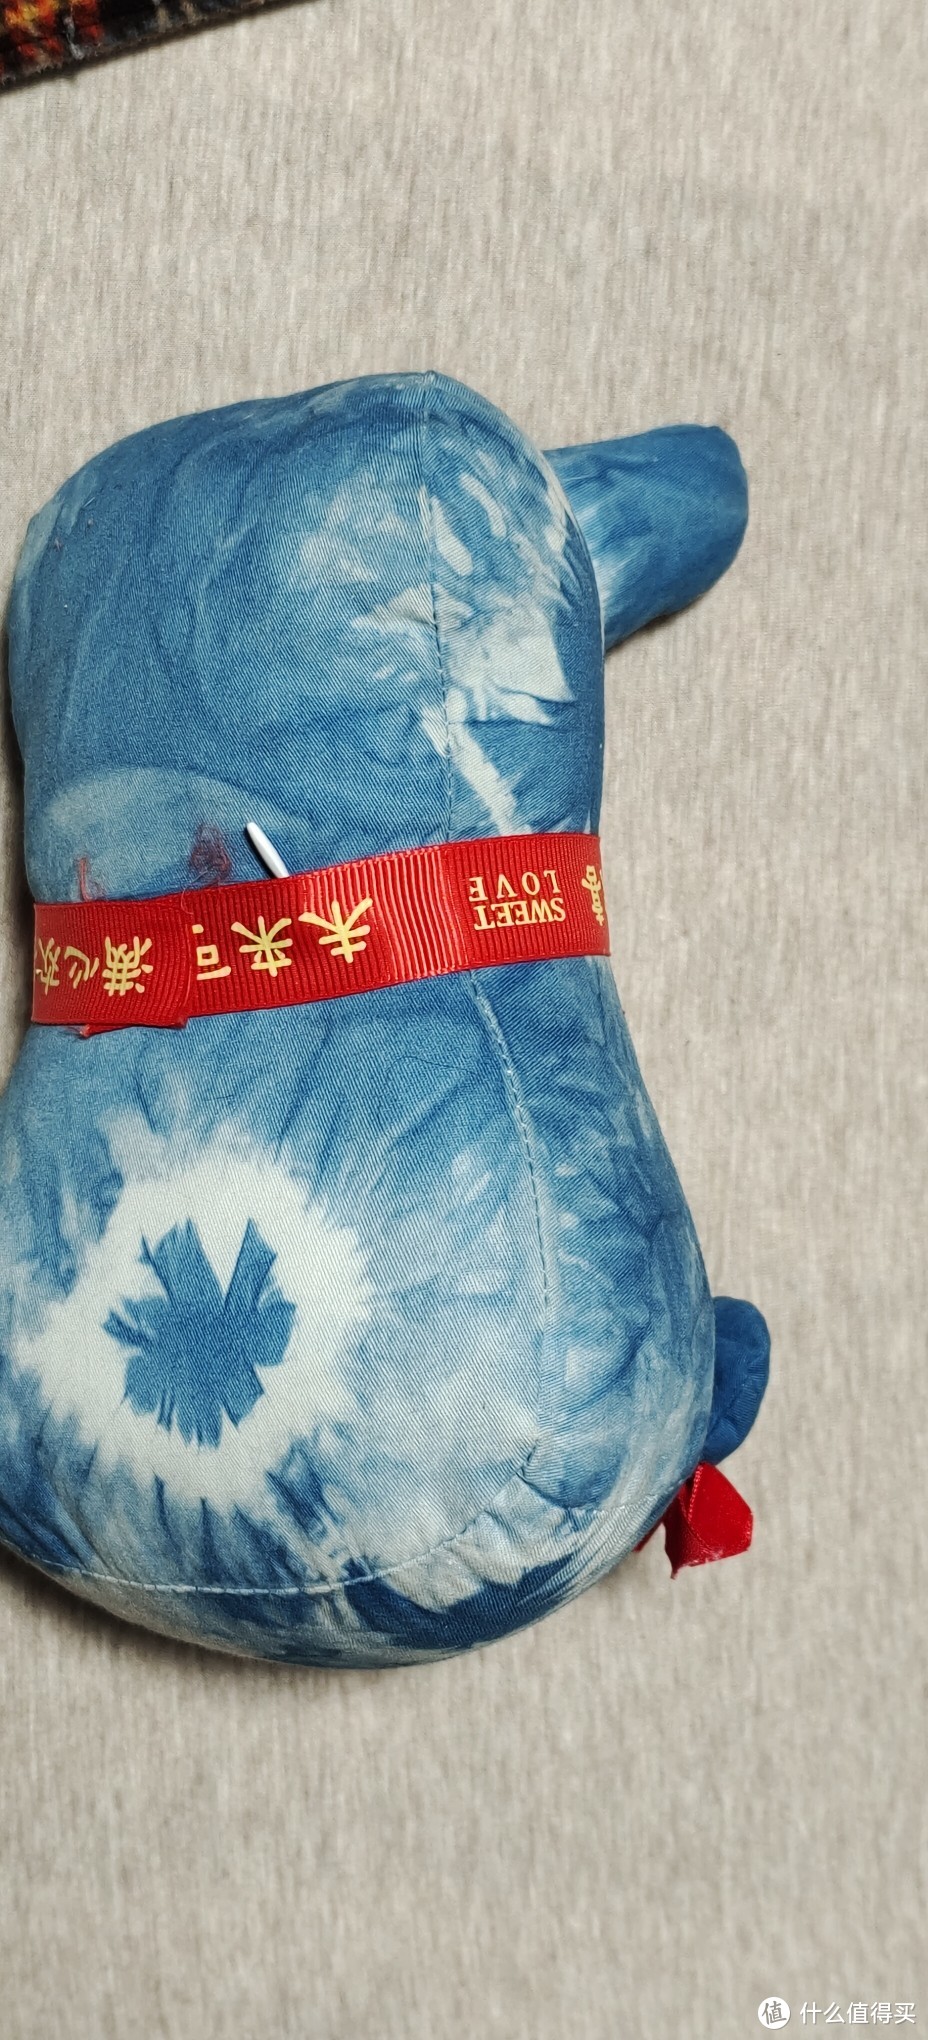 黄道婆纪念馆制作活动游园/体验一下什么是手工染布/上海旅游纪念馆手工制作天然染料布偶